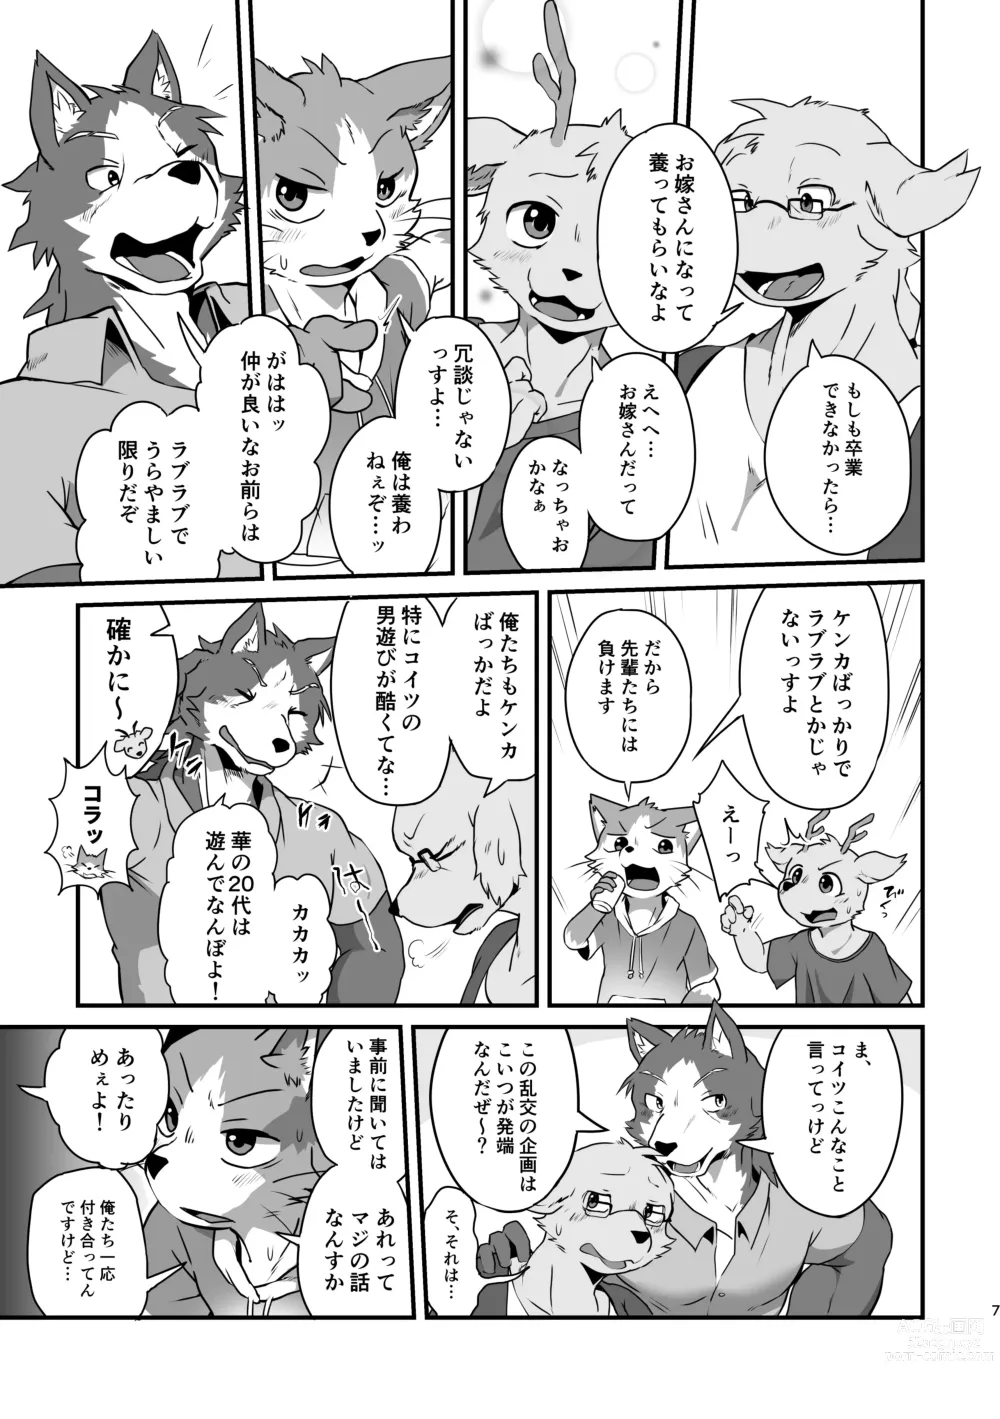 Page 6 of doujinshi Boku-Tachi Futari wa Neko shitai!